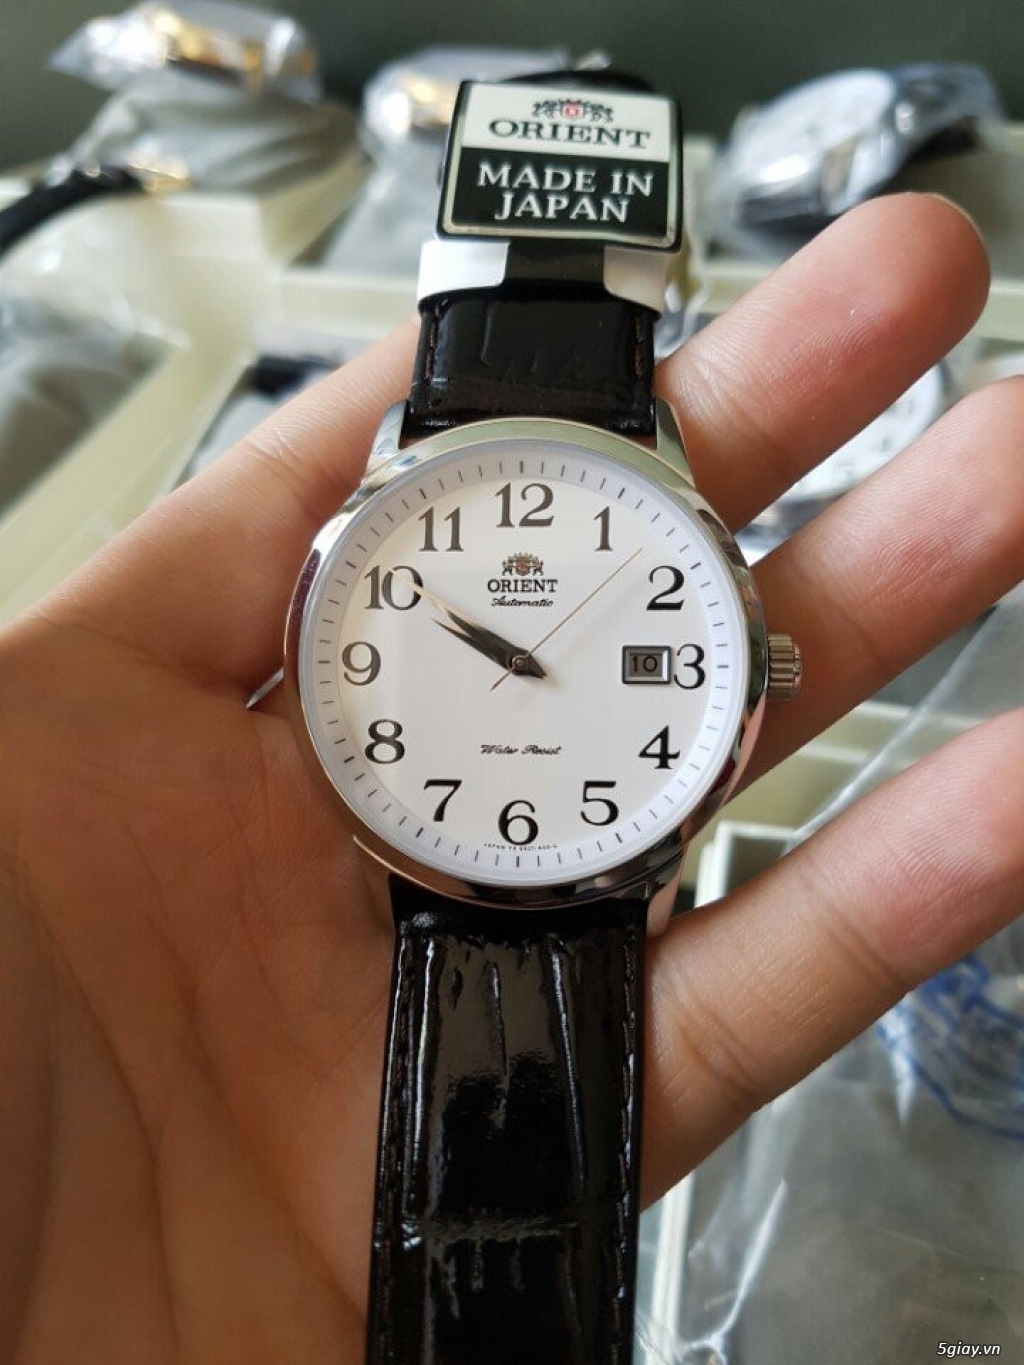 Đồng hồ ORIENT chính hãng Nhật bảo hành 1 năm giá thấp hơn thị trường - 1